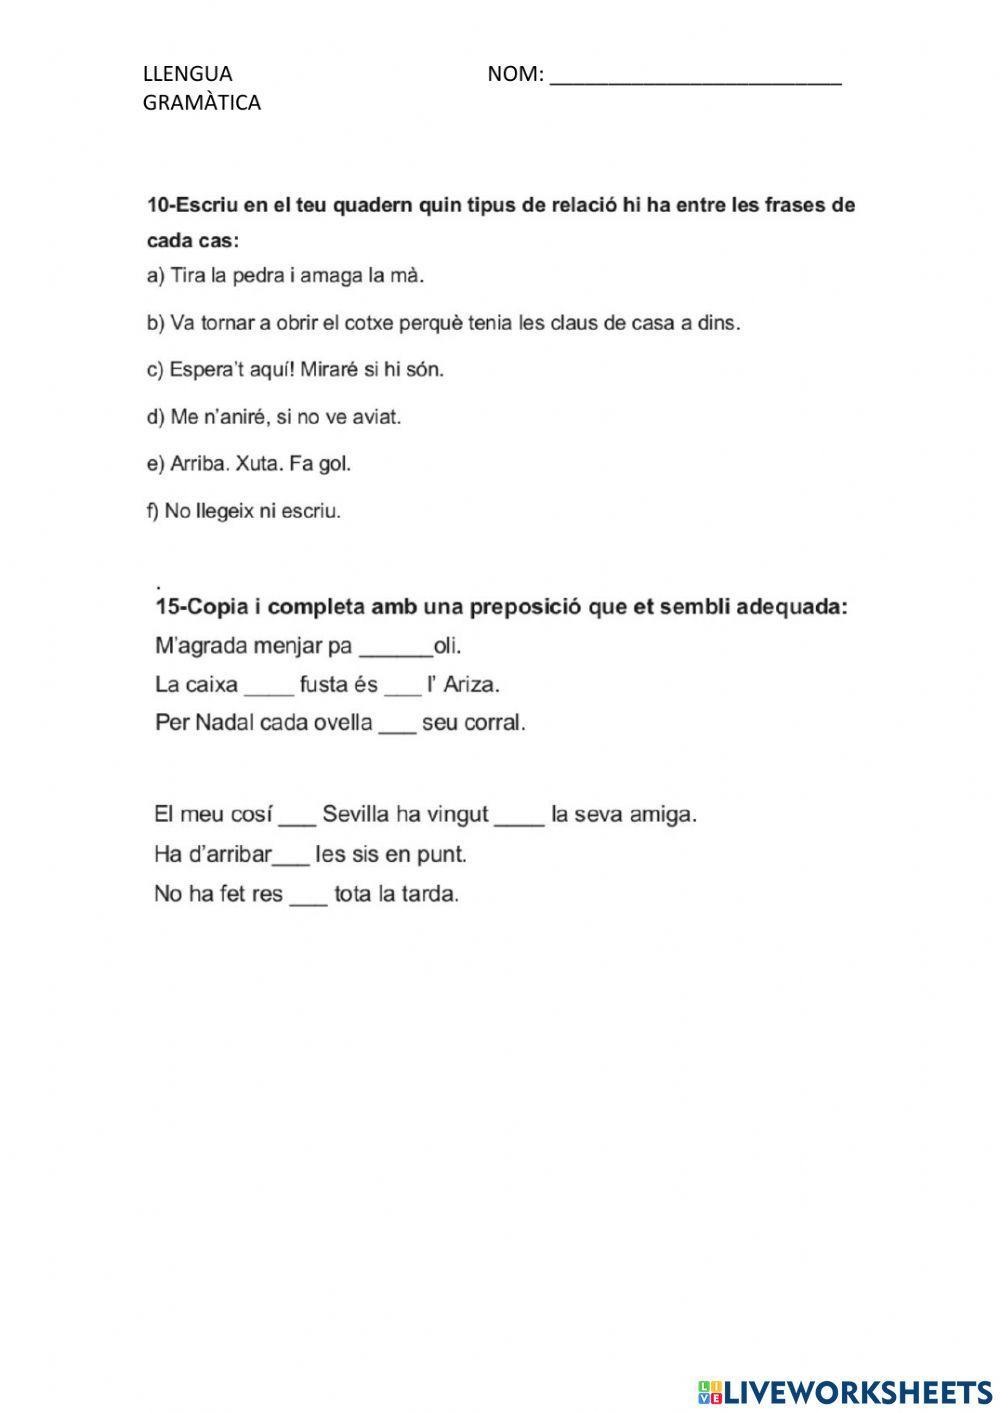 ENLLAÇOS (preposicions i conjuncions)